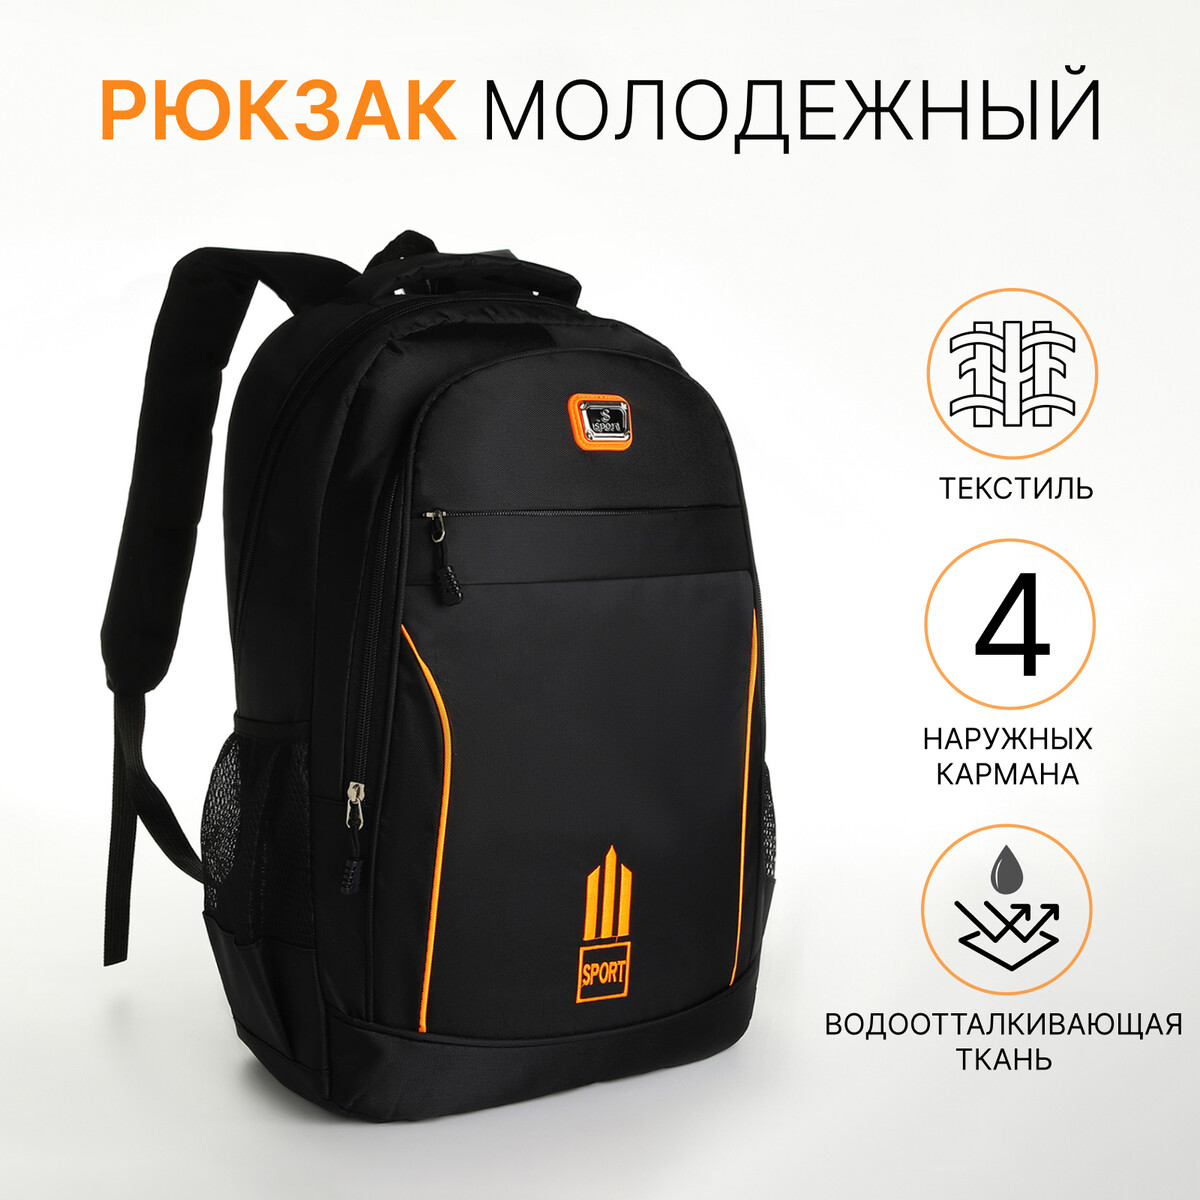 Рюкзак молодежный из текстиля на молнии, 4 кармана, цвет черный/оранжевый рюкзак 31 45 15 см отд на молнии 4 н кармана оранжевый